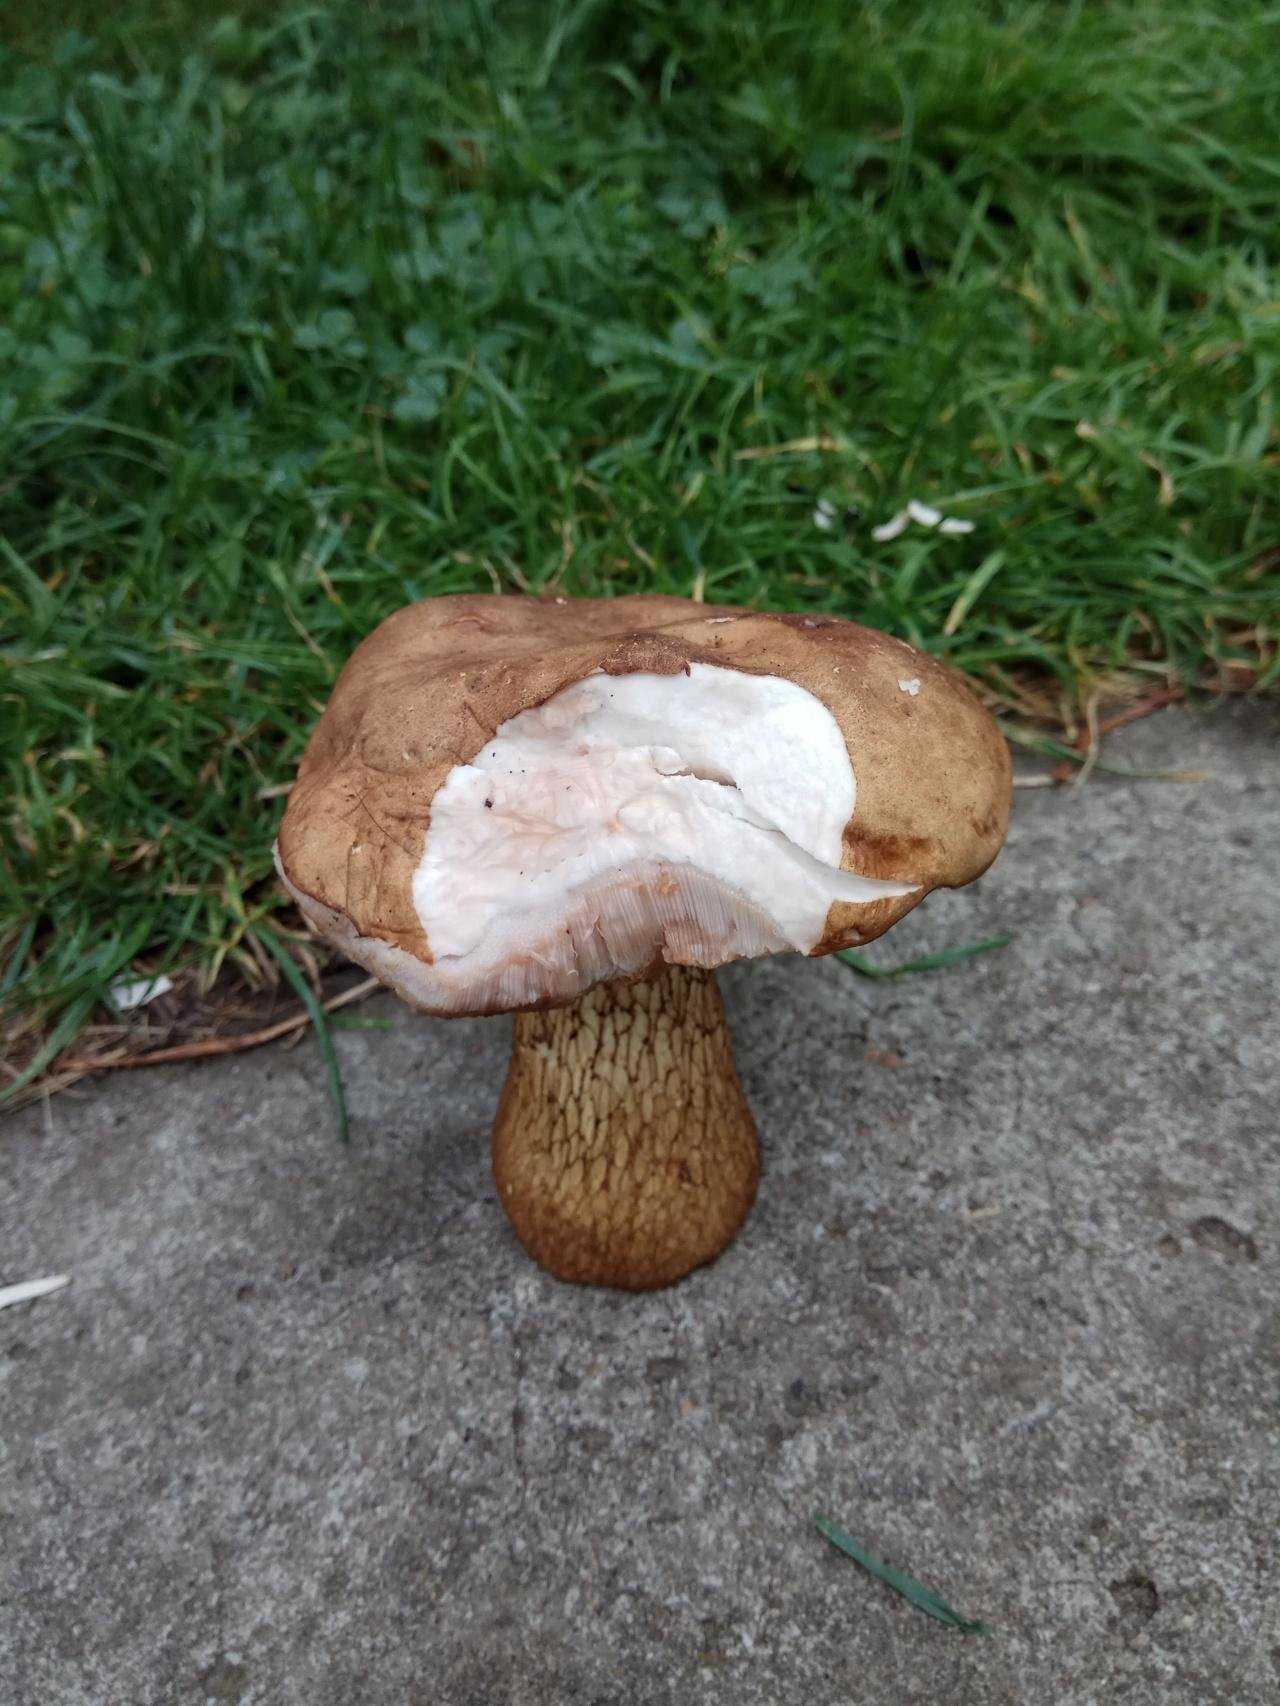 Описание желчного гриба и съедобный он или нет (+22 фото)?